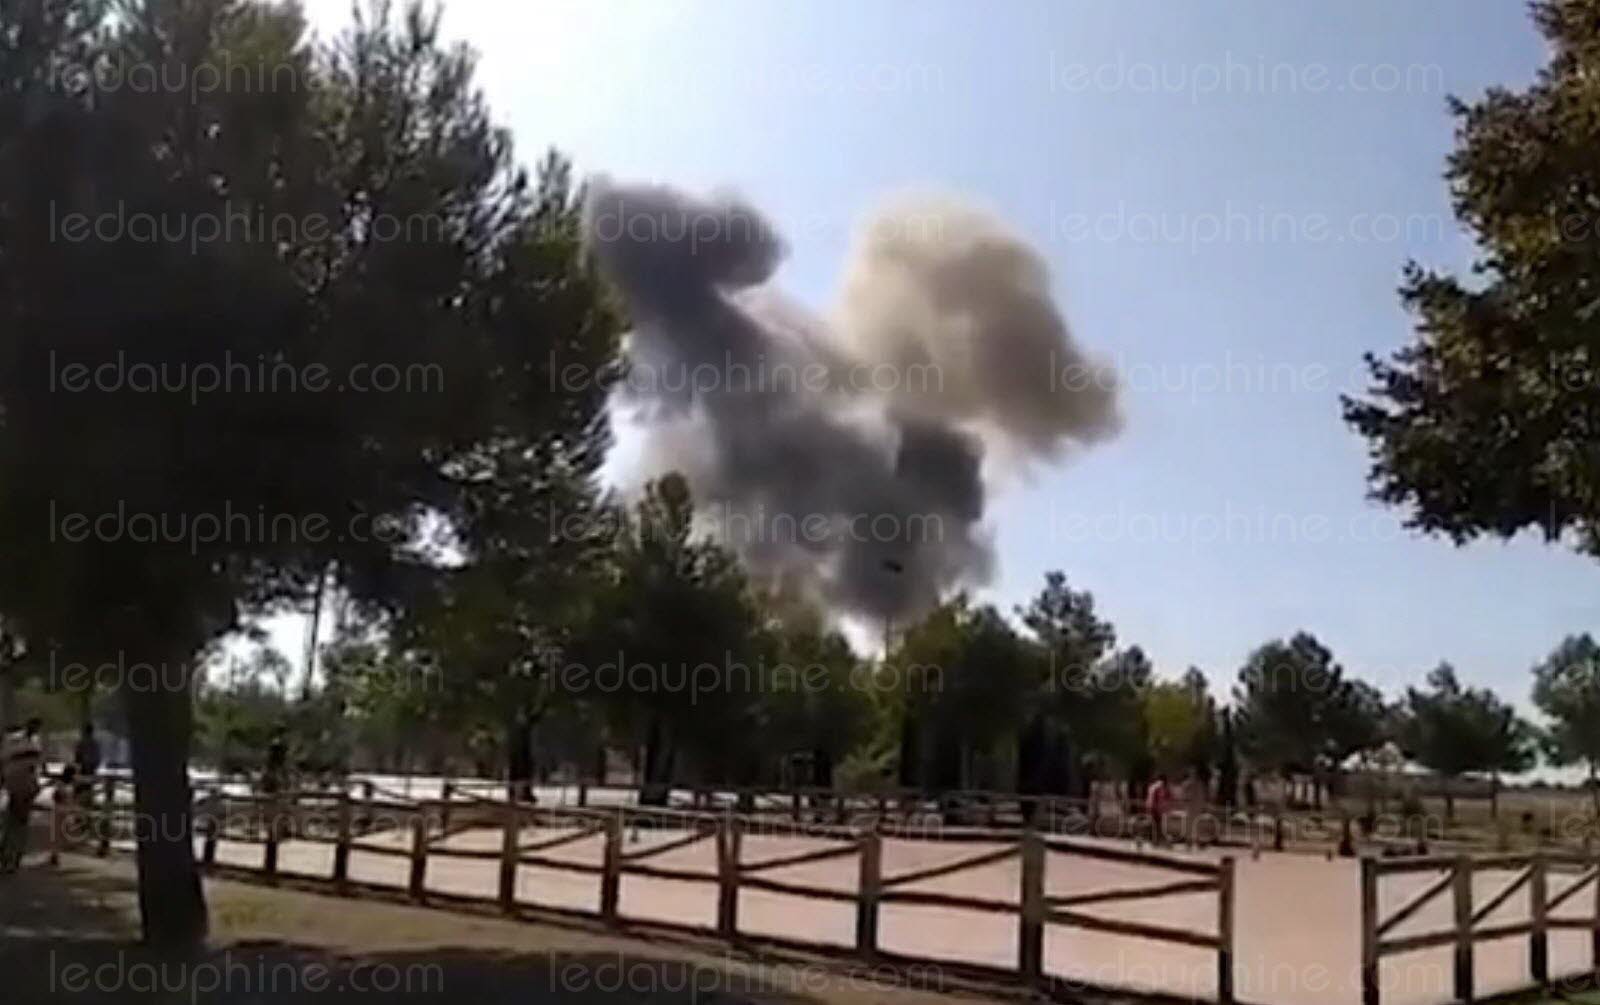 Espagne - Deuxième crash d'avion militaire en cinq jours: le pilote tué